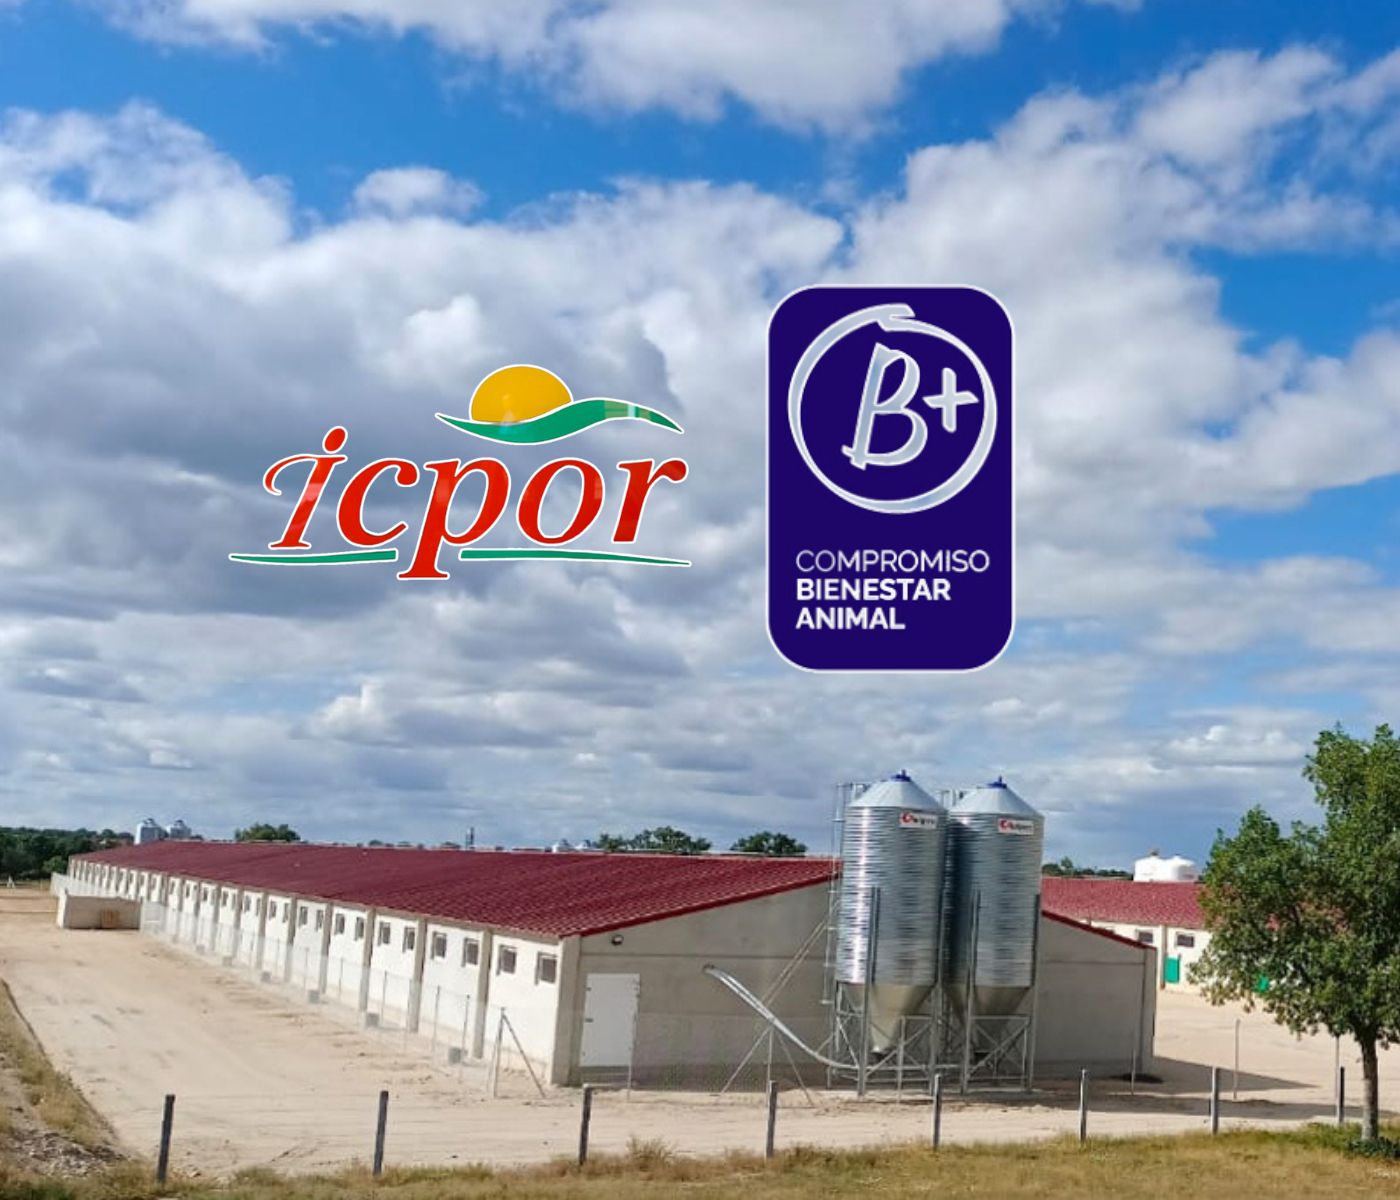 ICPOR recibe la certificación B+ Compromiso bienestar animal con la máxima calificación